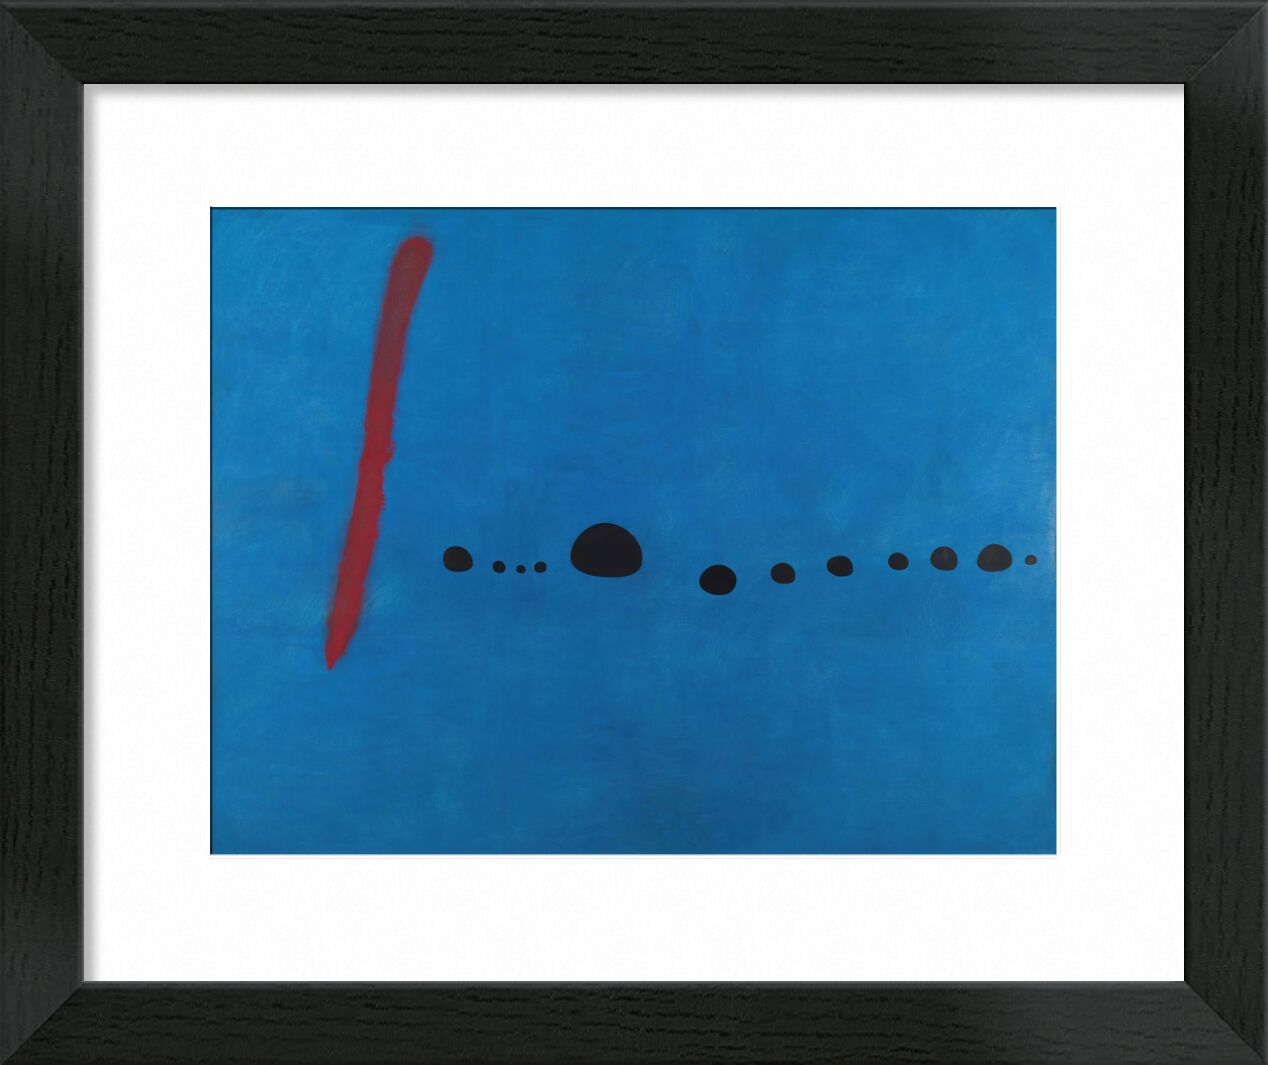 Blue II - Joan Miró von Bildende Kunst, Prodi Art, Malerei, Punkte, Züge, rot, Unendlichkeit, abstrakt, Zeichnung, blau, Joan Miró